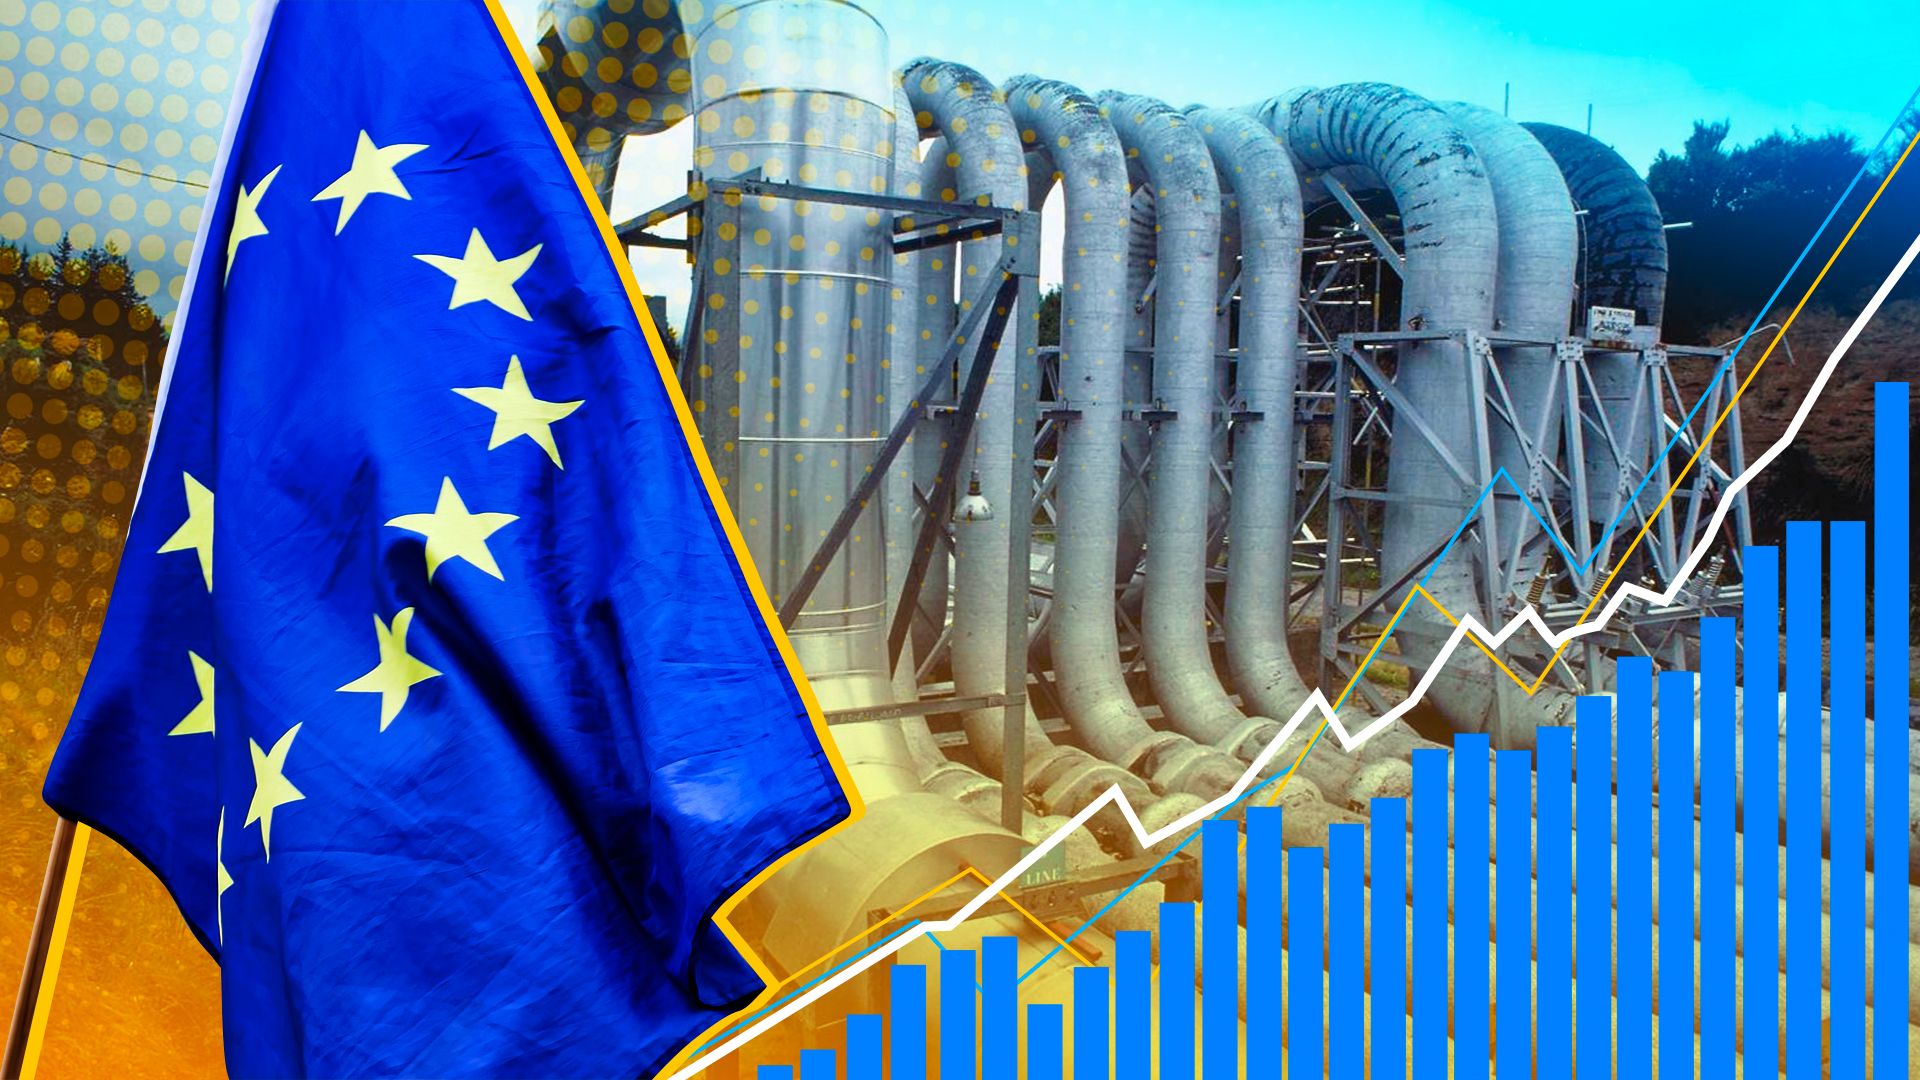 la Repubblica: Европа переживает энергокризис «невиданных масштабов» Экономика